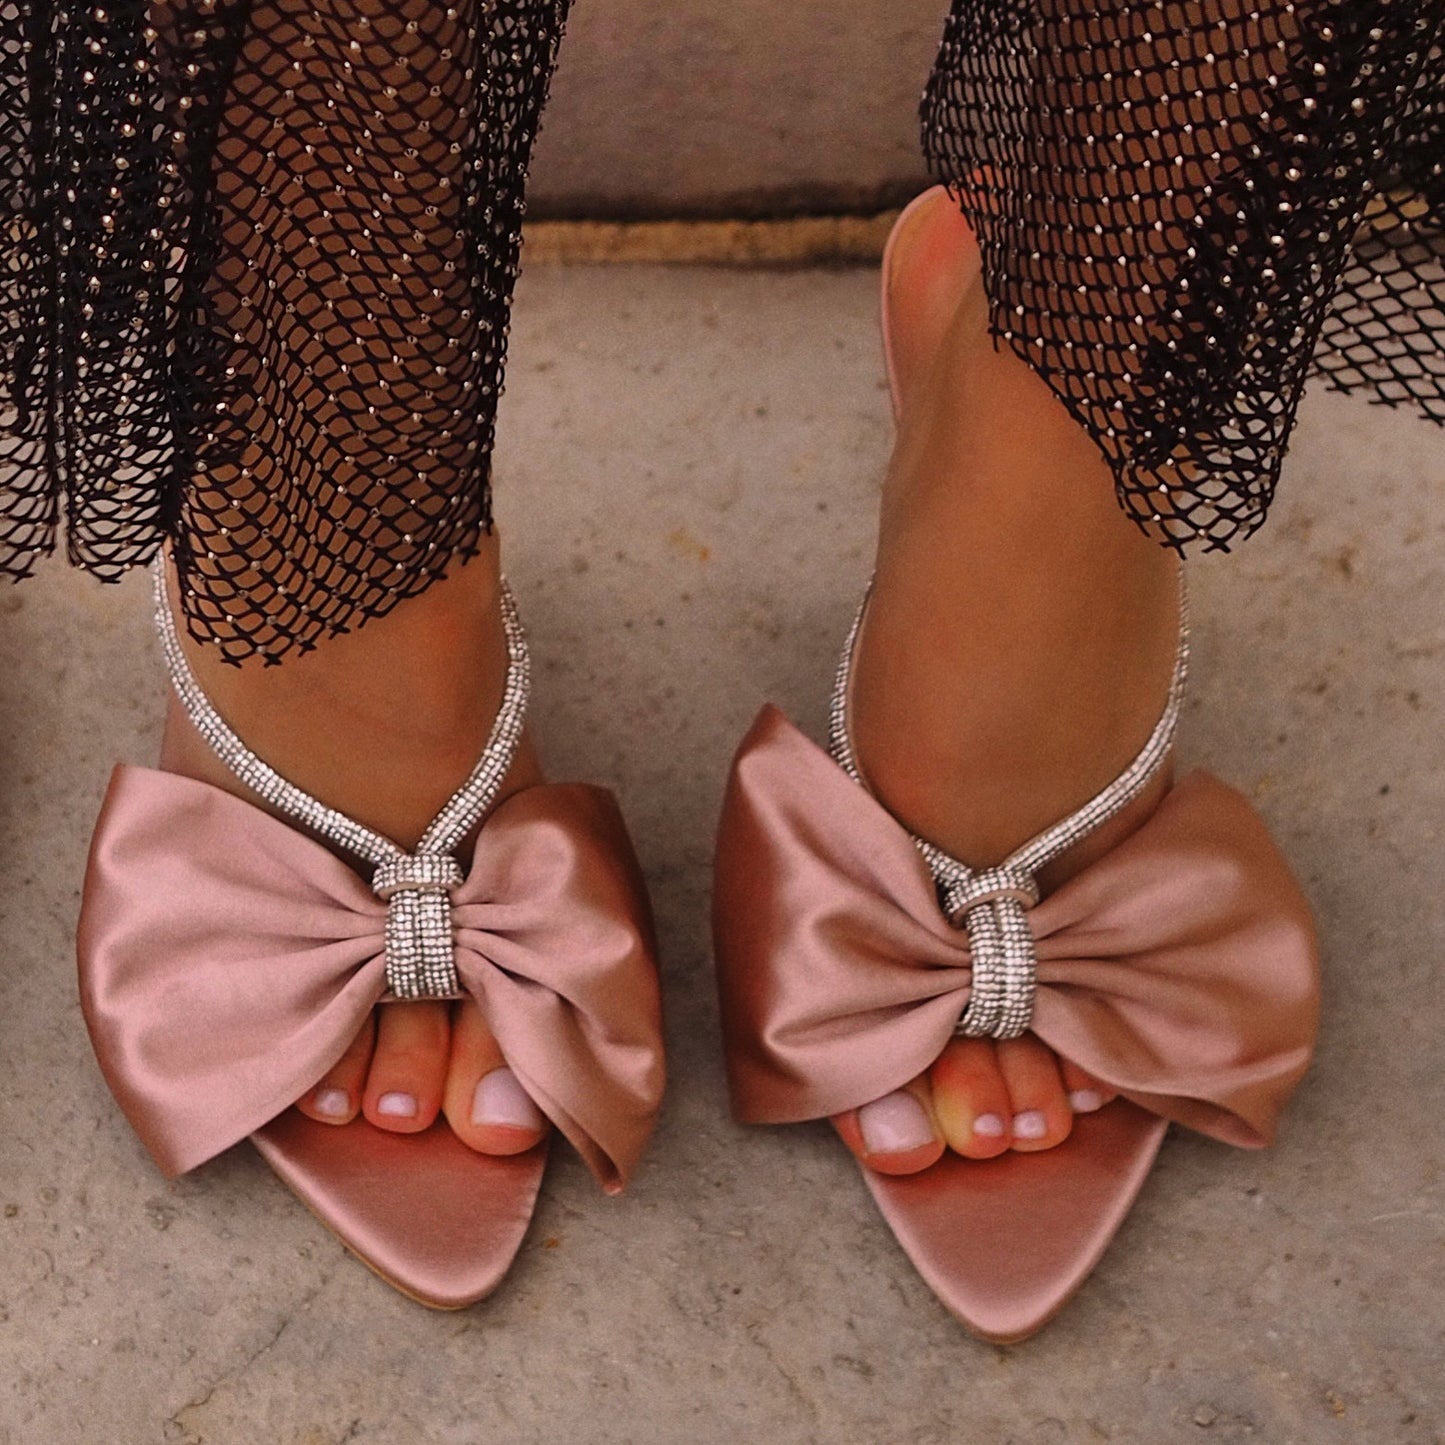 Bow heels